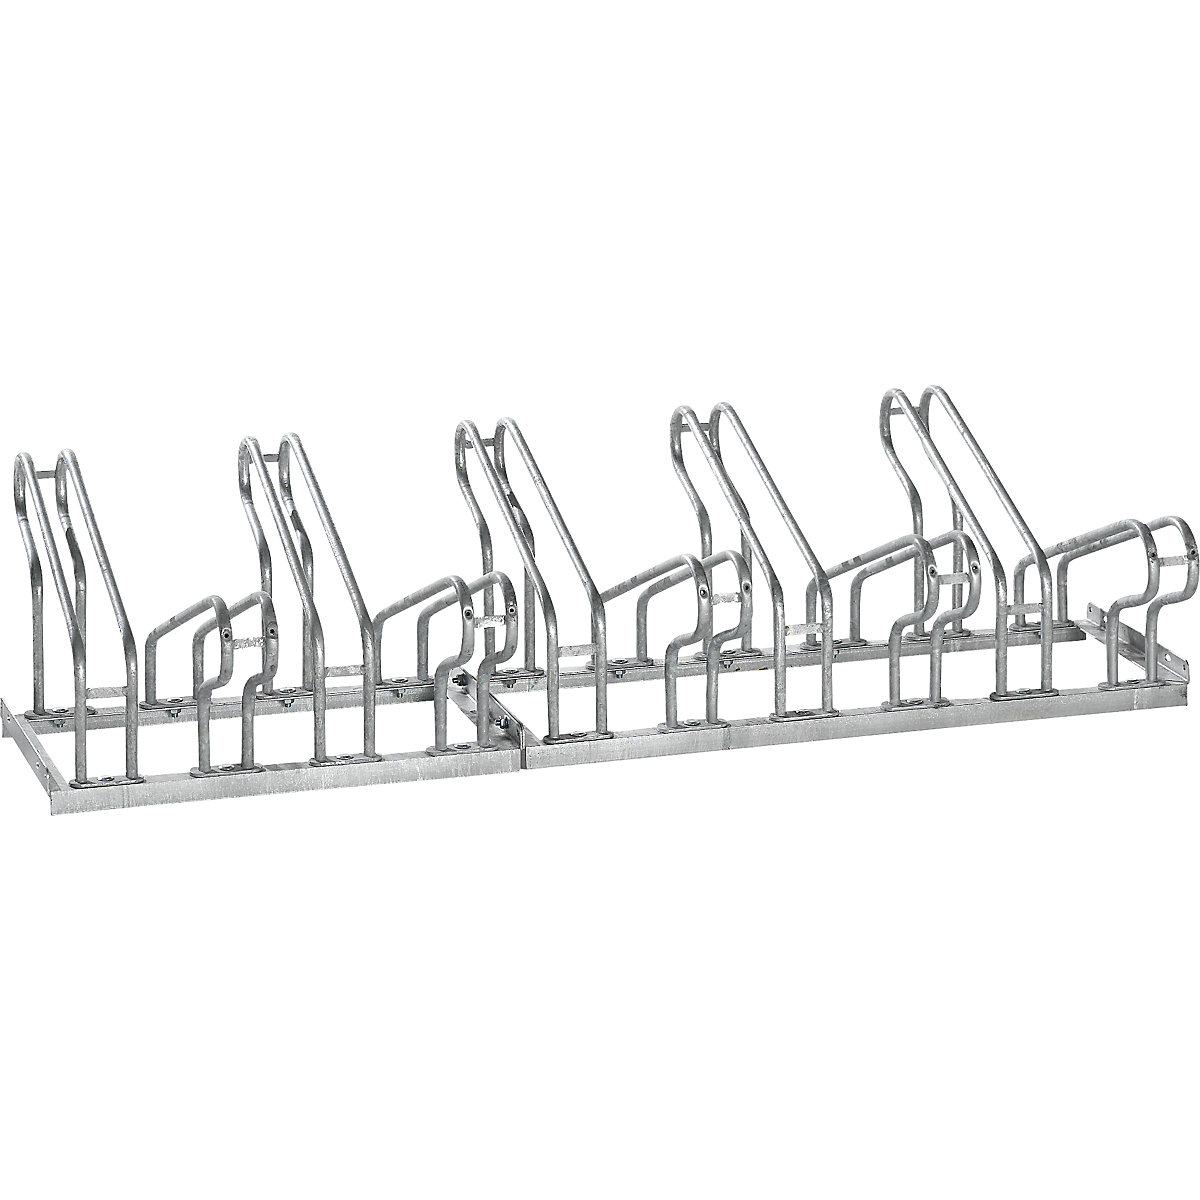 EUROKRAFTpro – Bicycle rack, bars made of 18 mm steel tubing